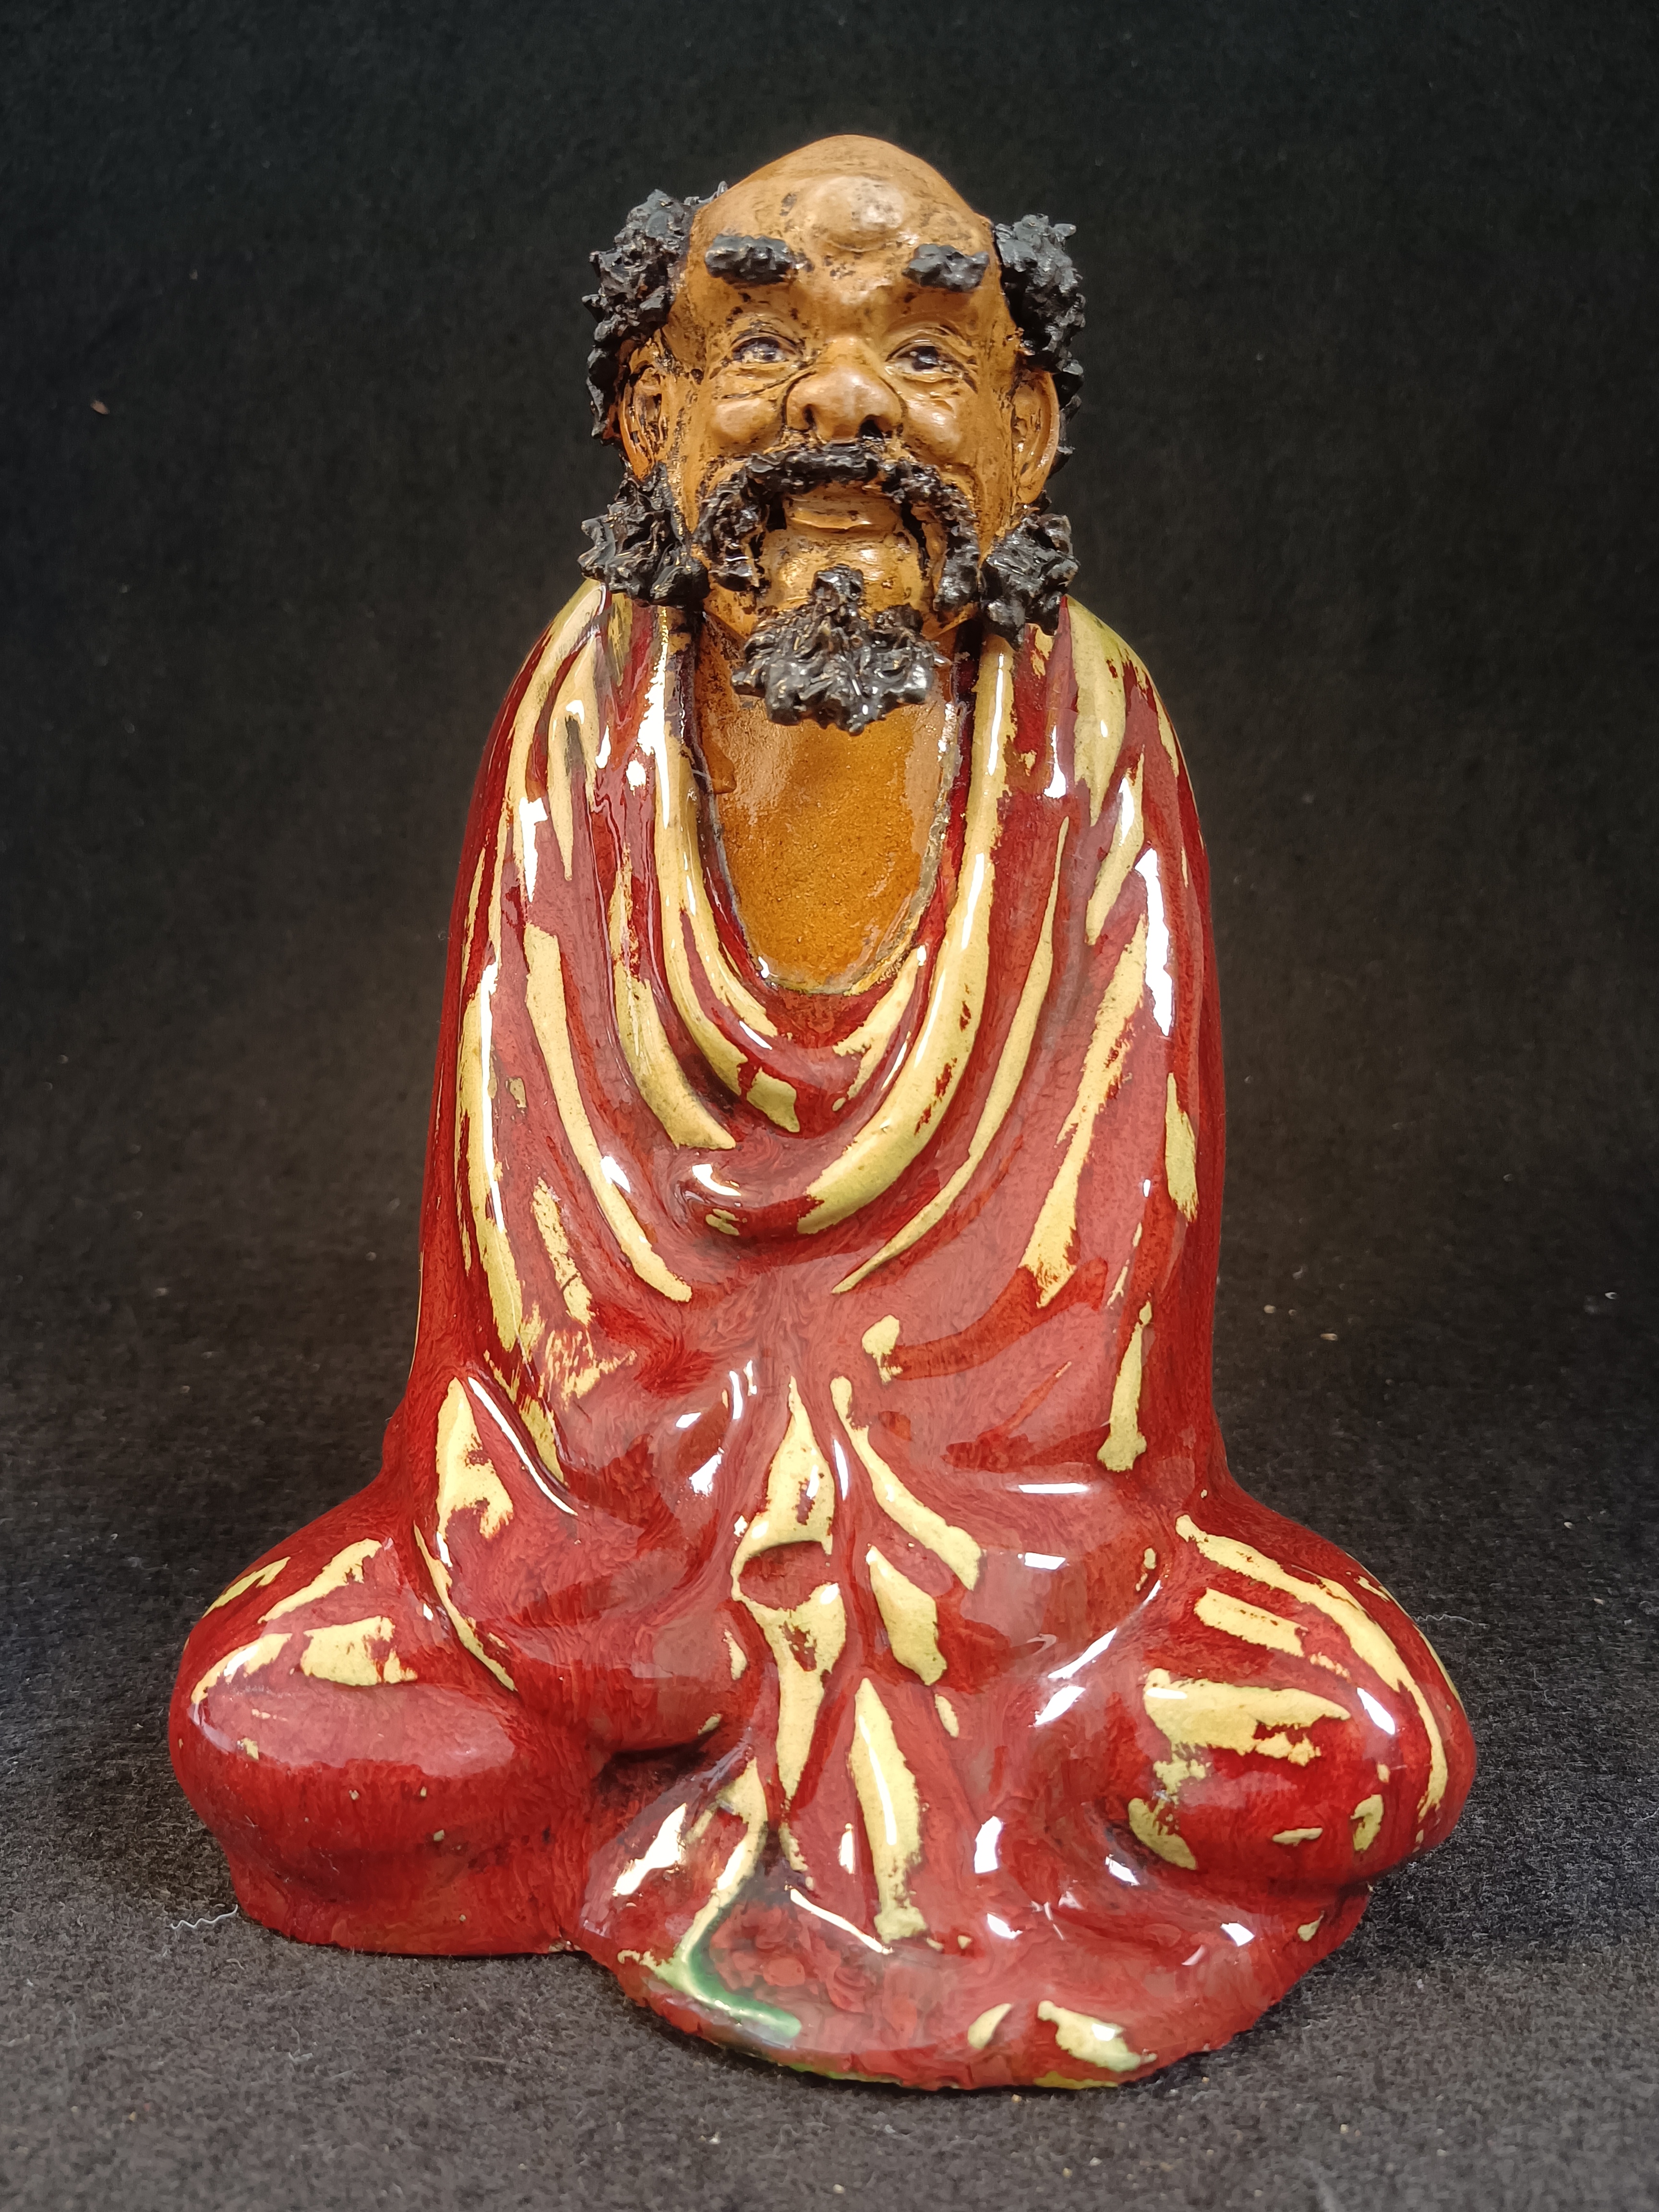 （全美品）民国时期石湾窑公仔达摩祖师泥塑陶瓷人物雕塑陶瓷摆件